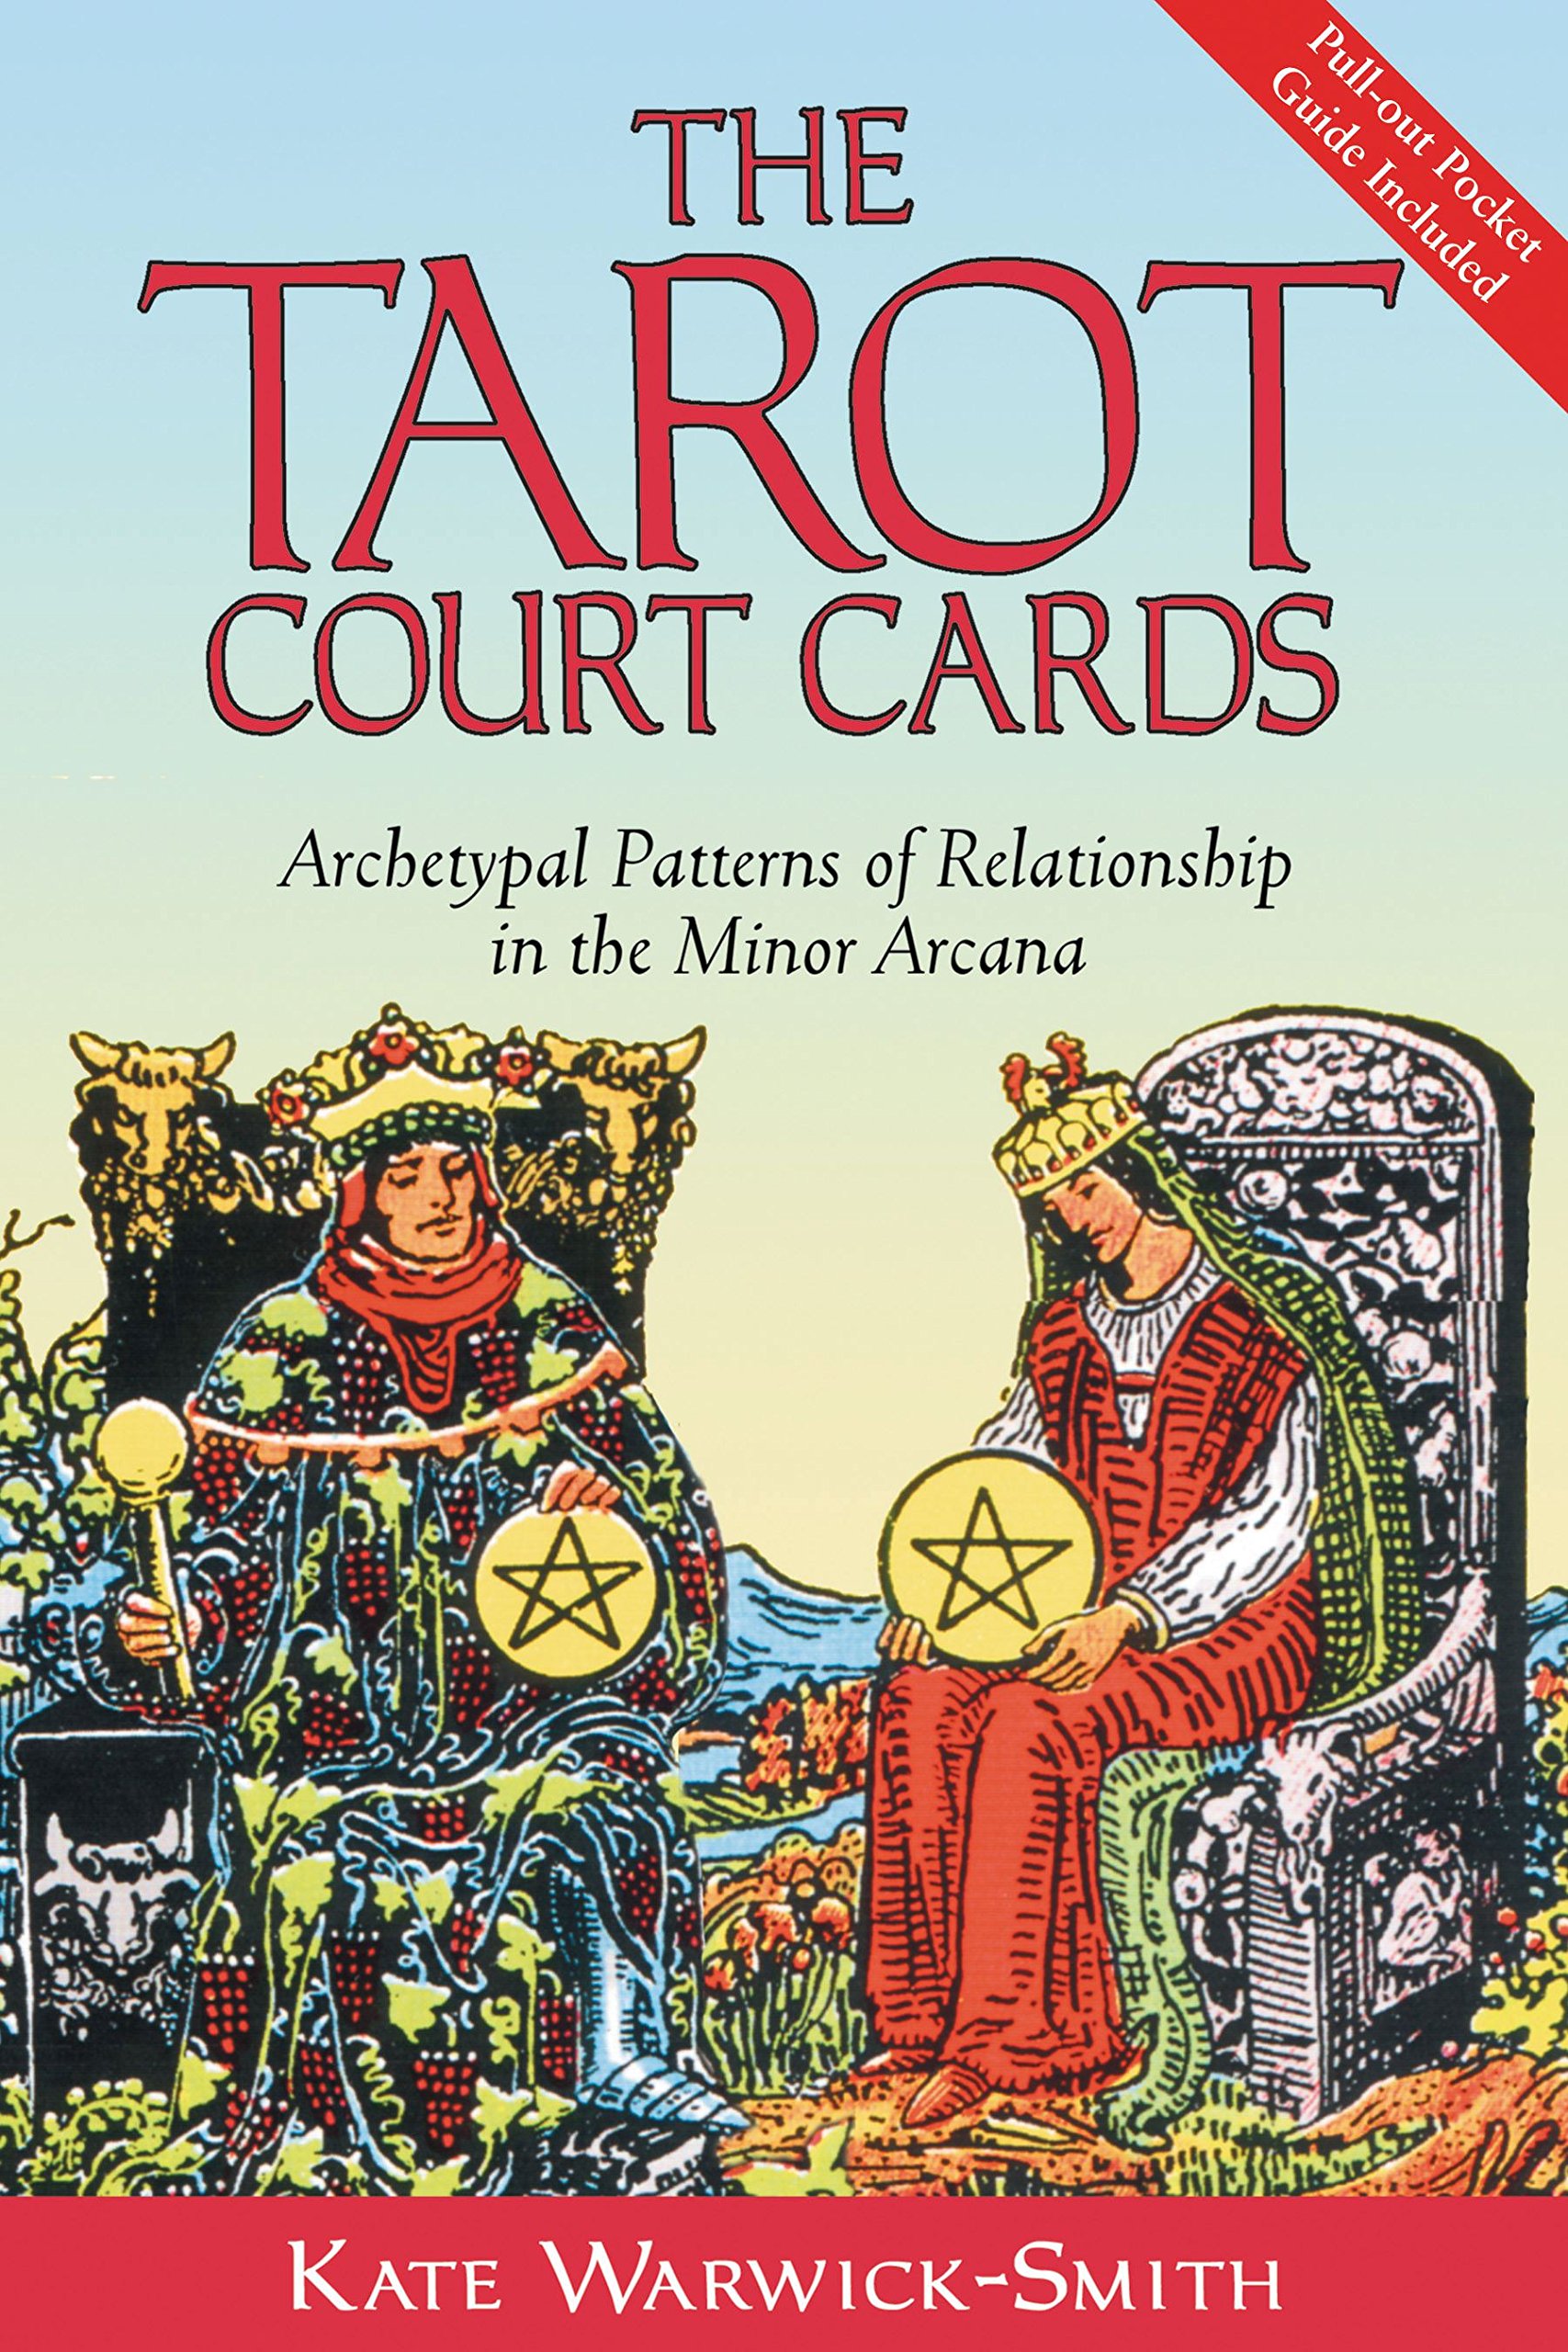 The Tarot Court Cards